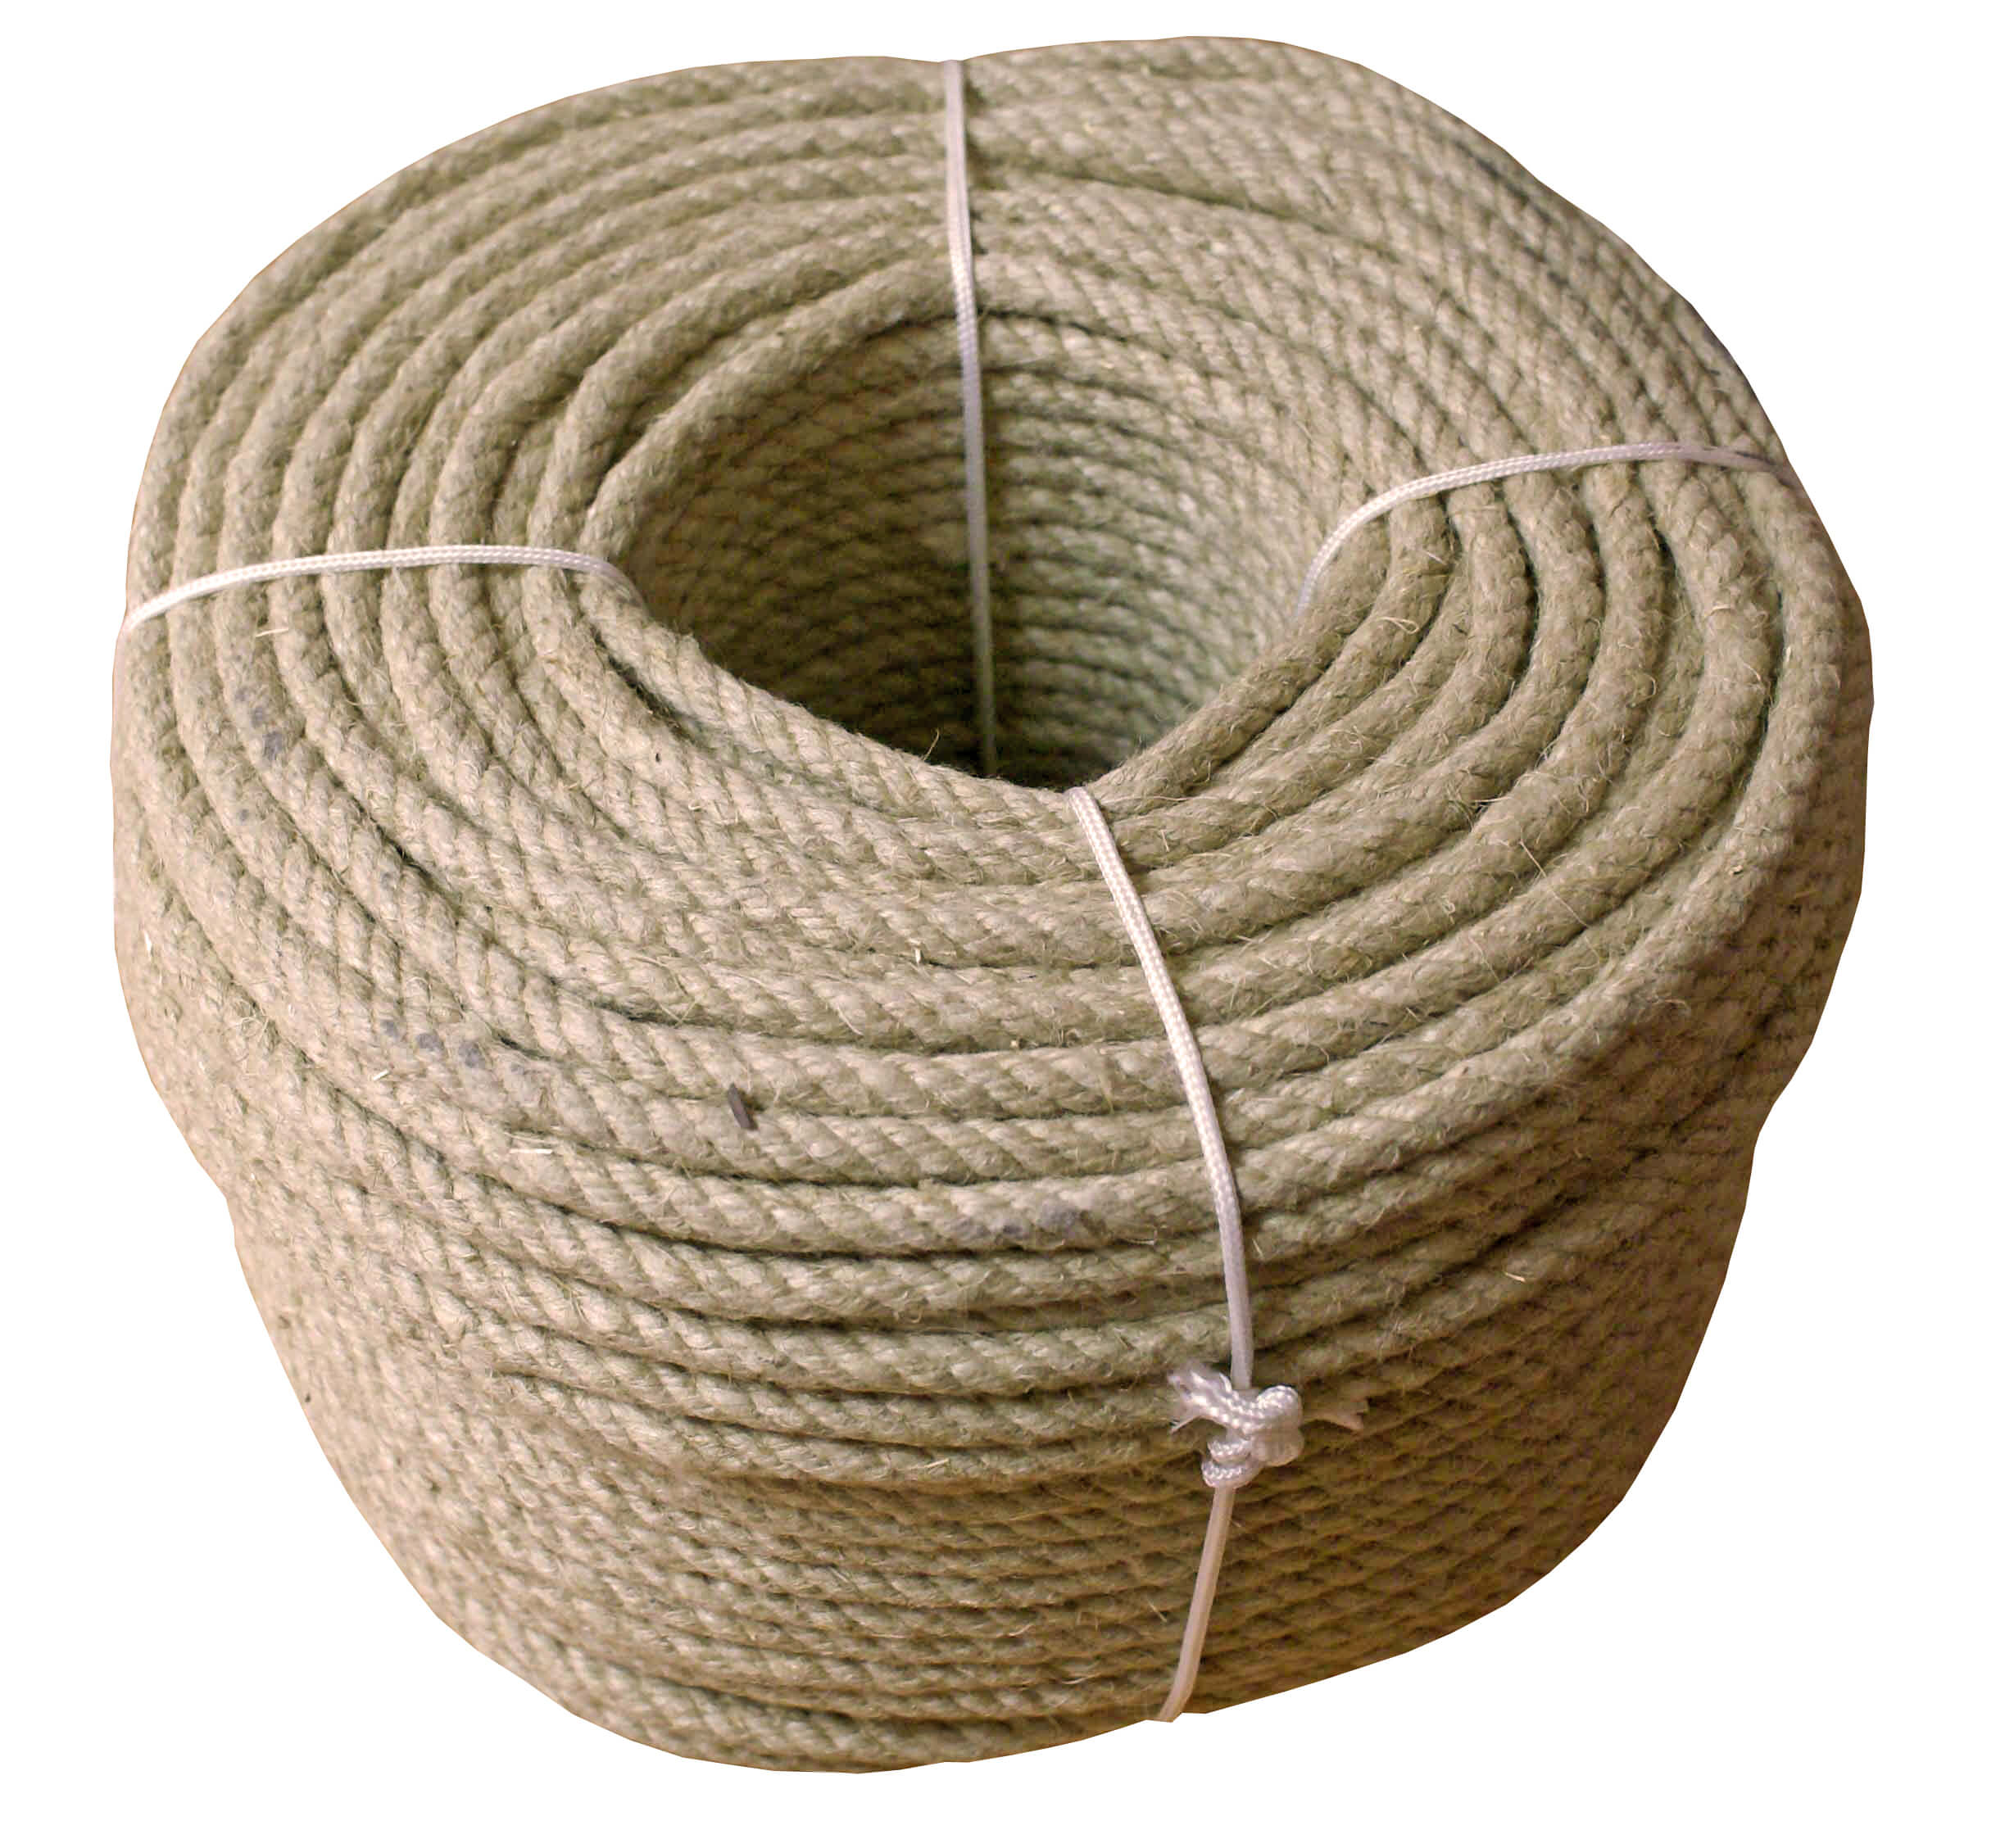  Cuerda de cáñamo resistente y natural, cuerda de cáñamo, cuerda  de cáñamo duradera, cuerda trenzada de cáñamo de 0.315 in, cuerda de  artesanía para manualidades y artes industriales, materiales de embalaje